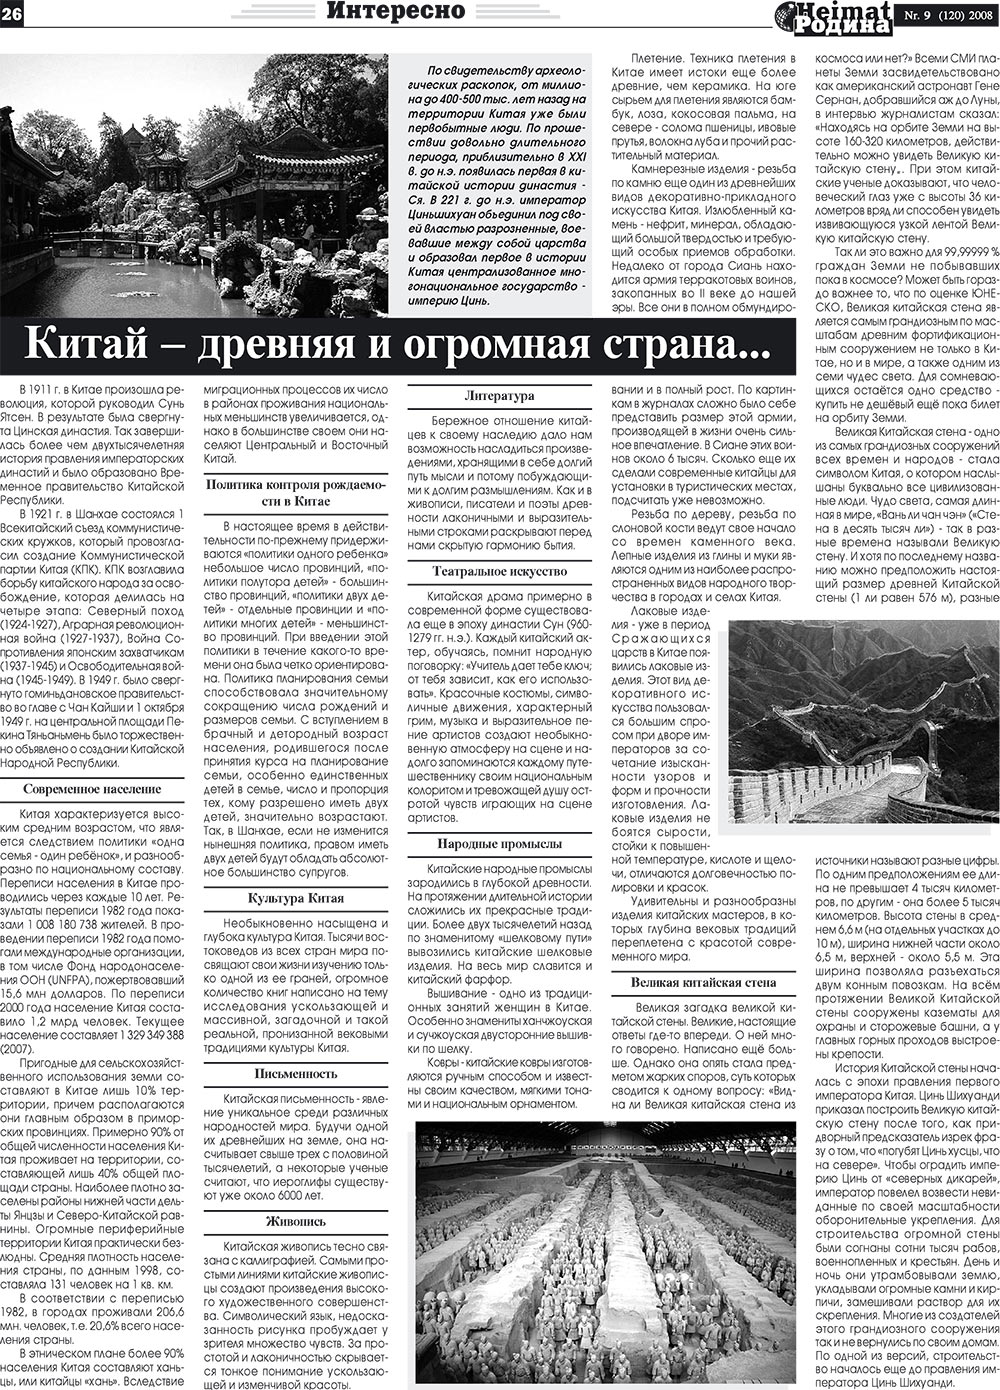 Heimat-Родина (газета). 2008 год, номер 9, стр. 26